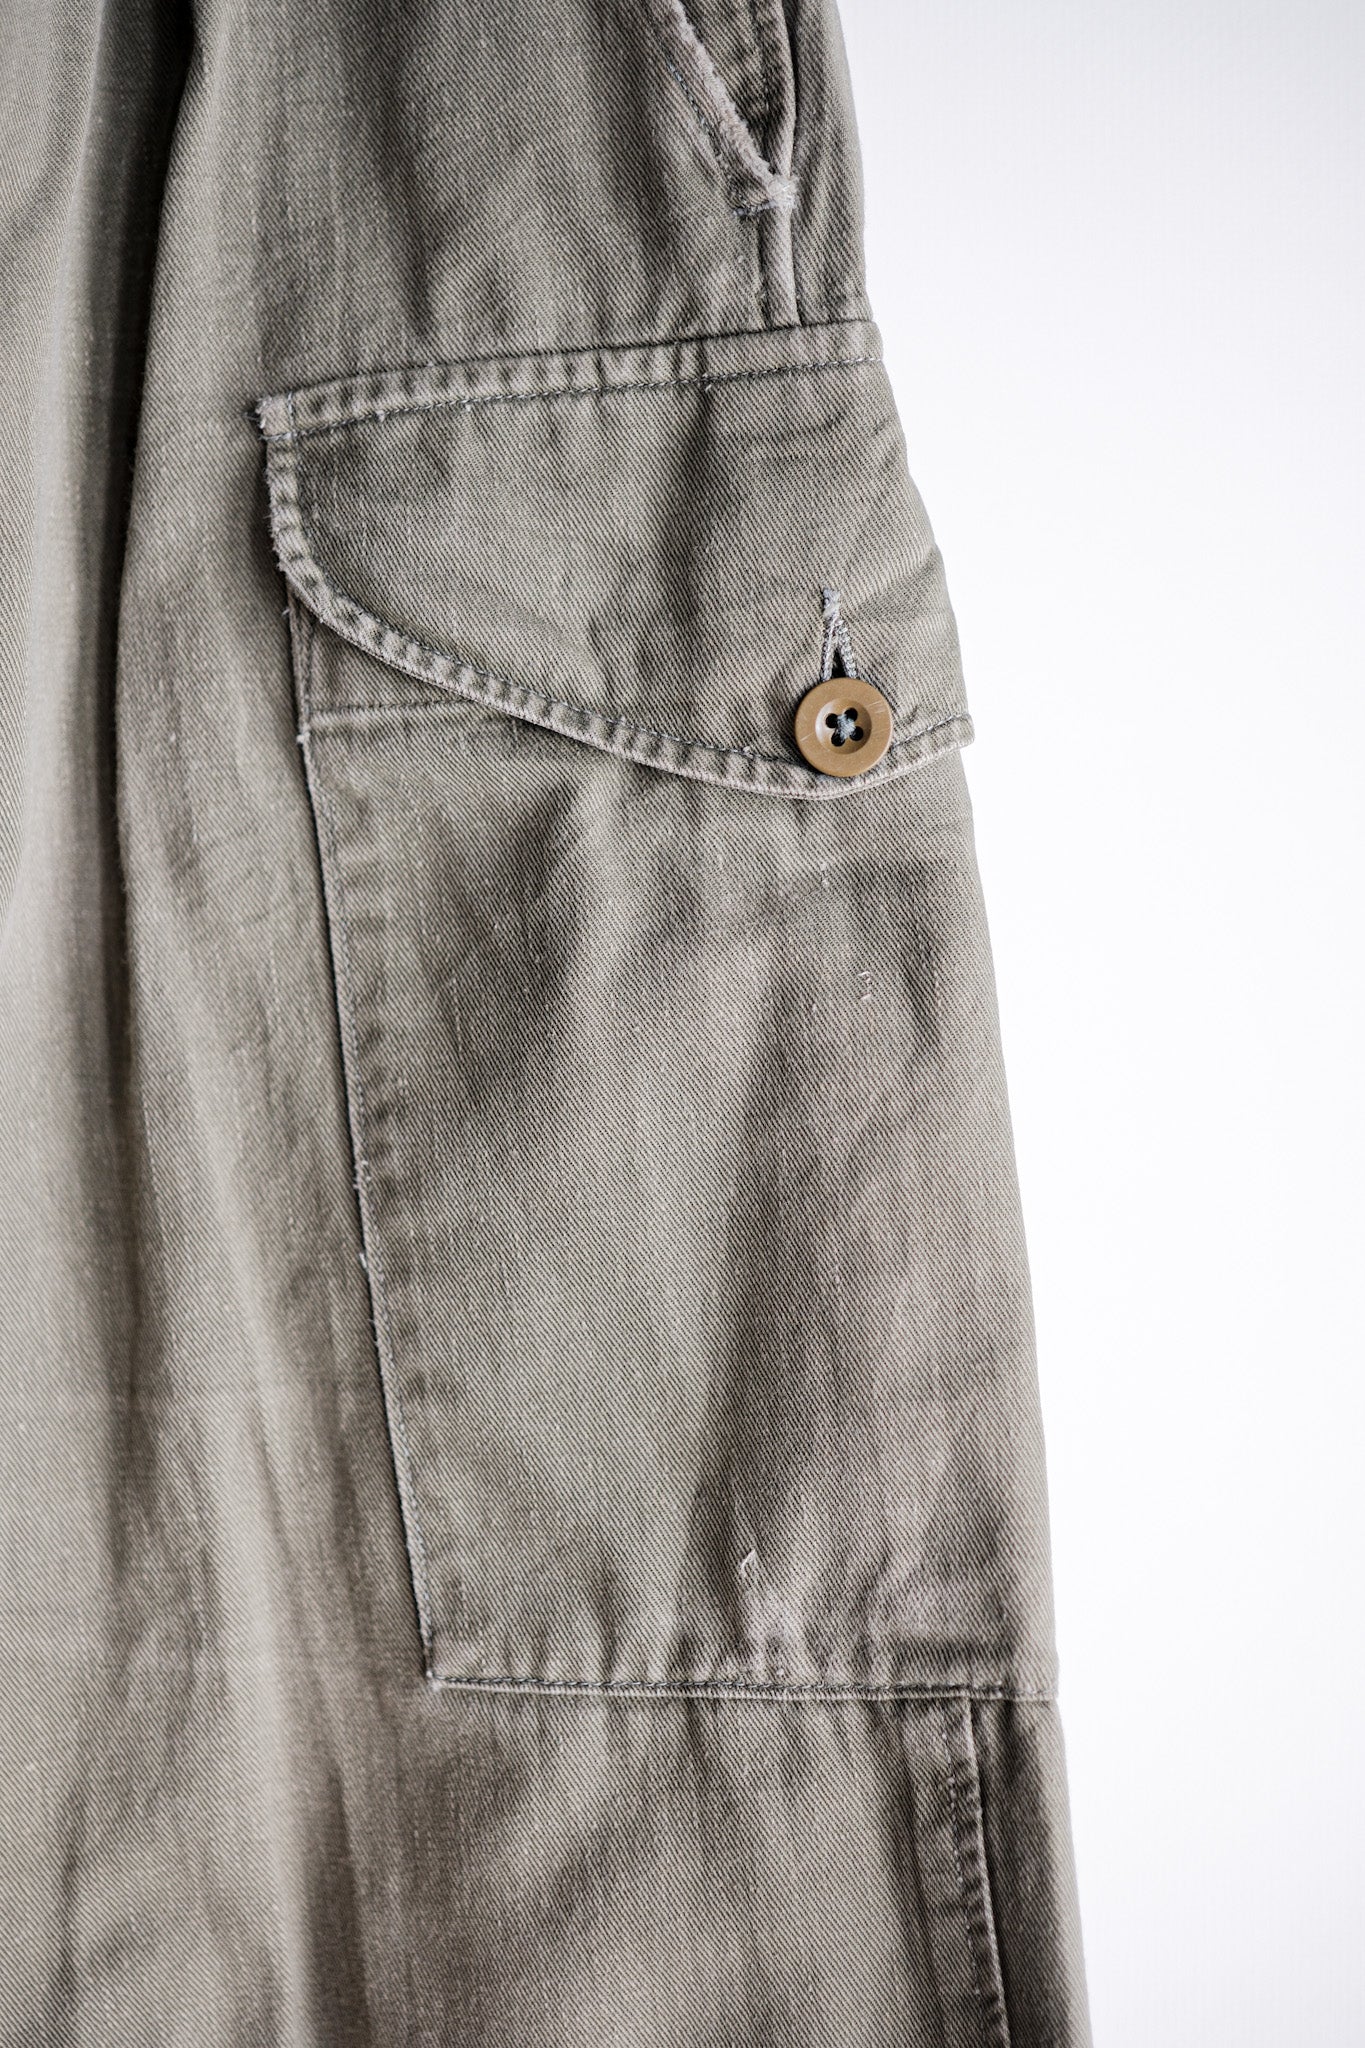 [~ 60's] British Army 1950 Pattern gurkha pantalon